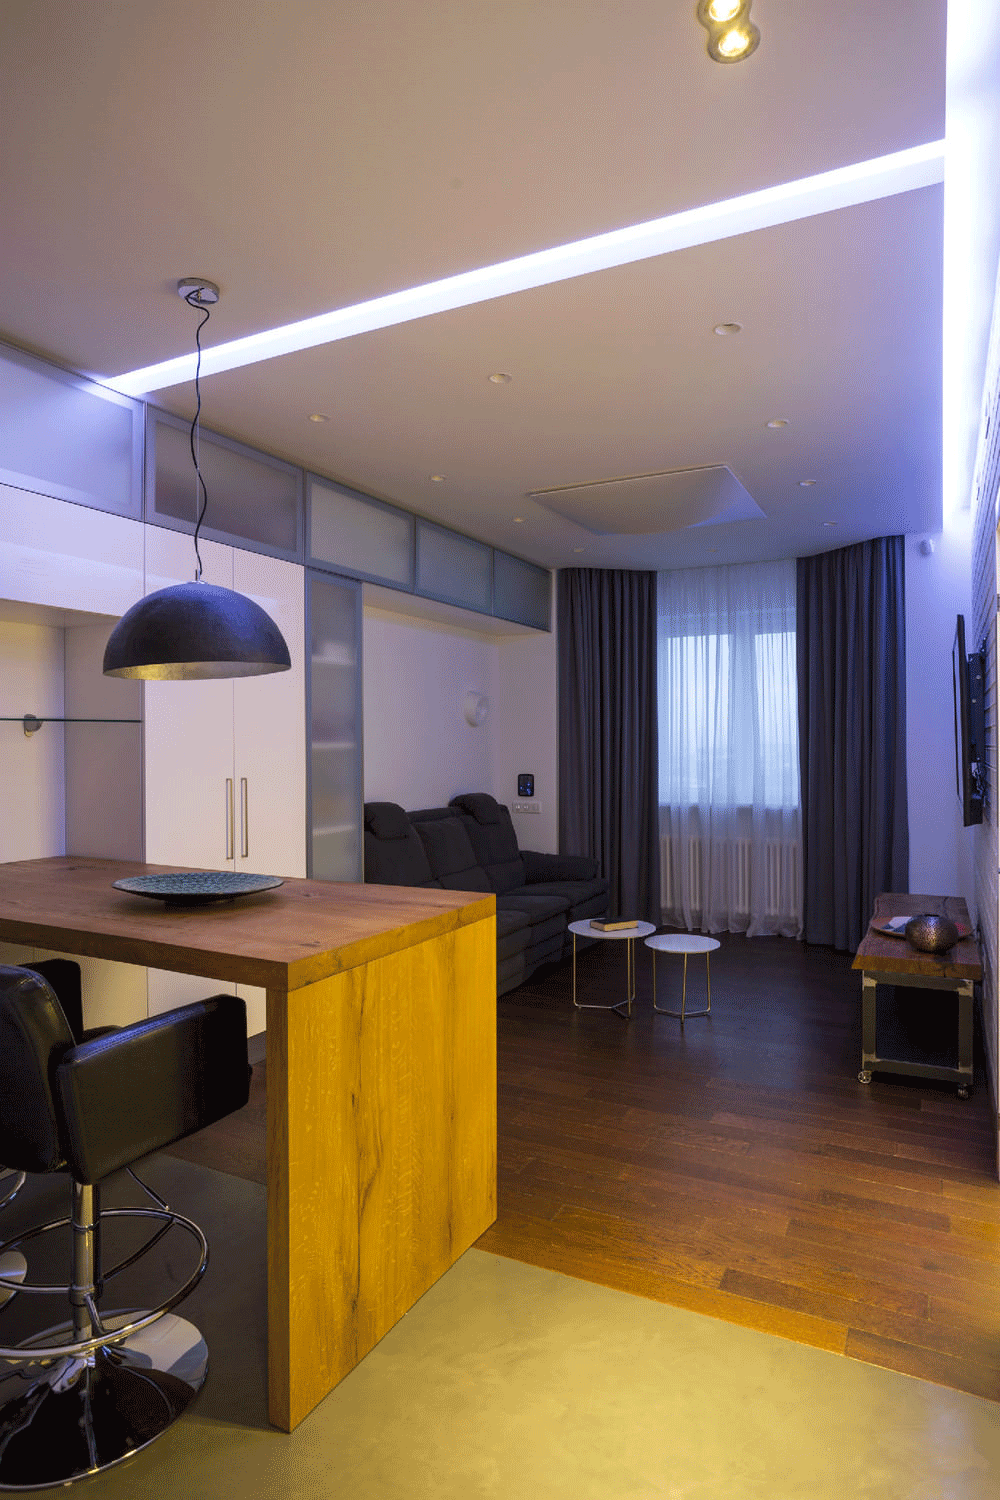 Beleuchtung im Design einer Zweizimmerwohnung von 43 qm. m.